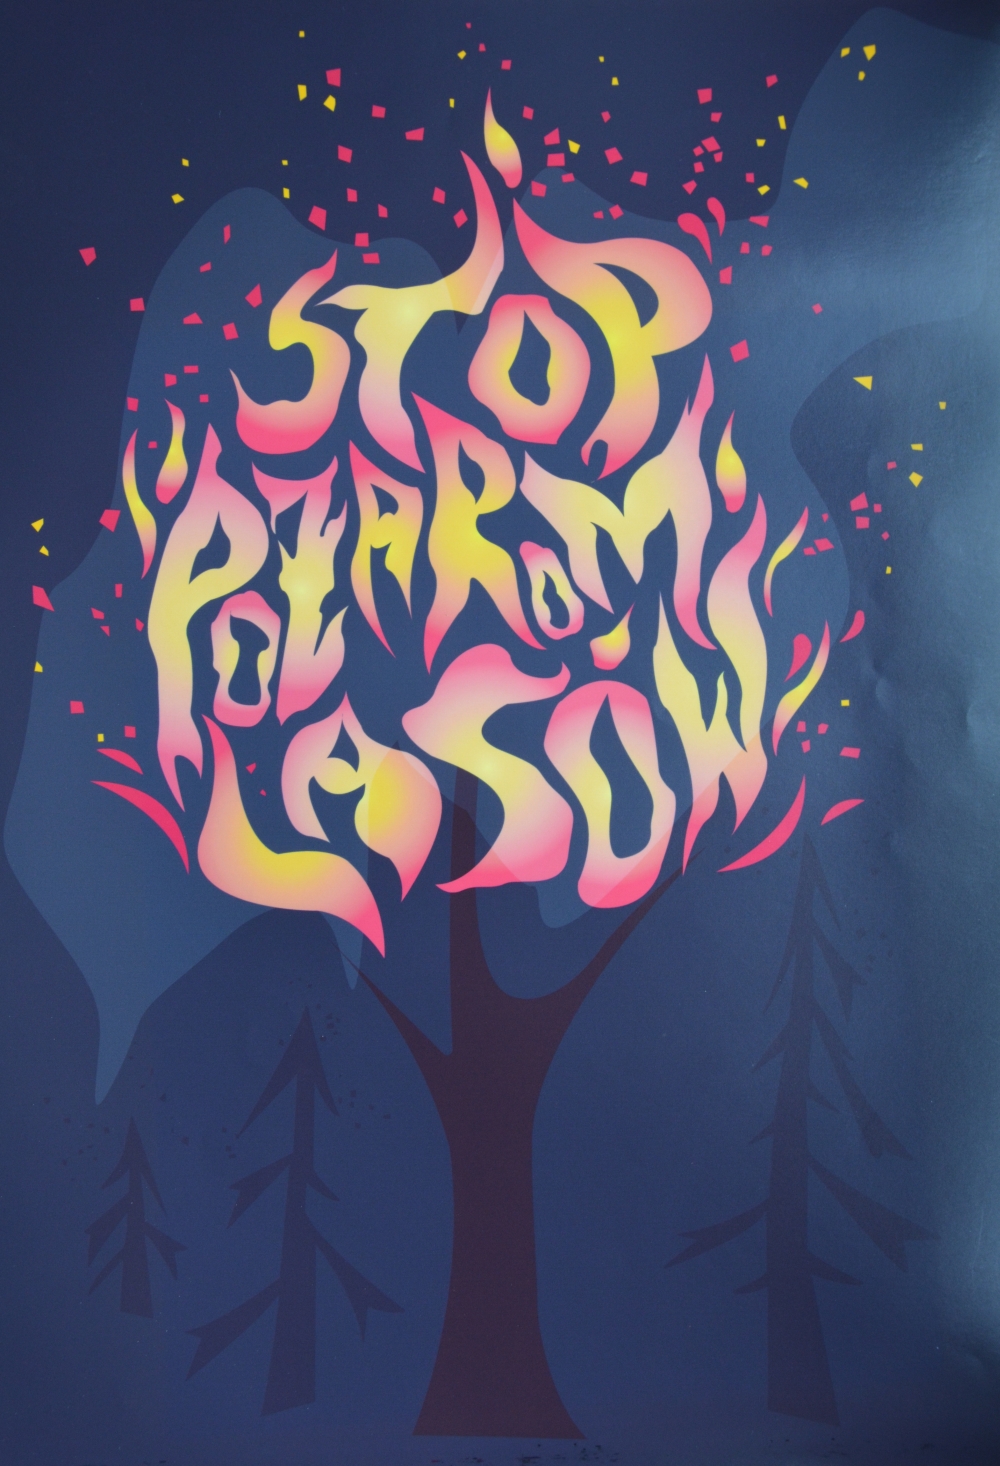 stop pozarom lasow ZAMOŚĆ: I etap konkursu „Stop pożarom lasów” rozstrzygnięty